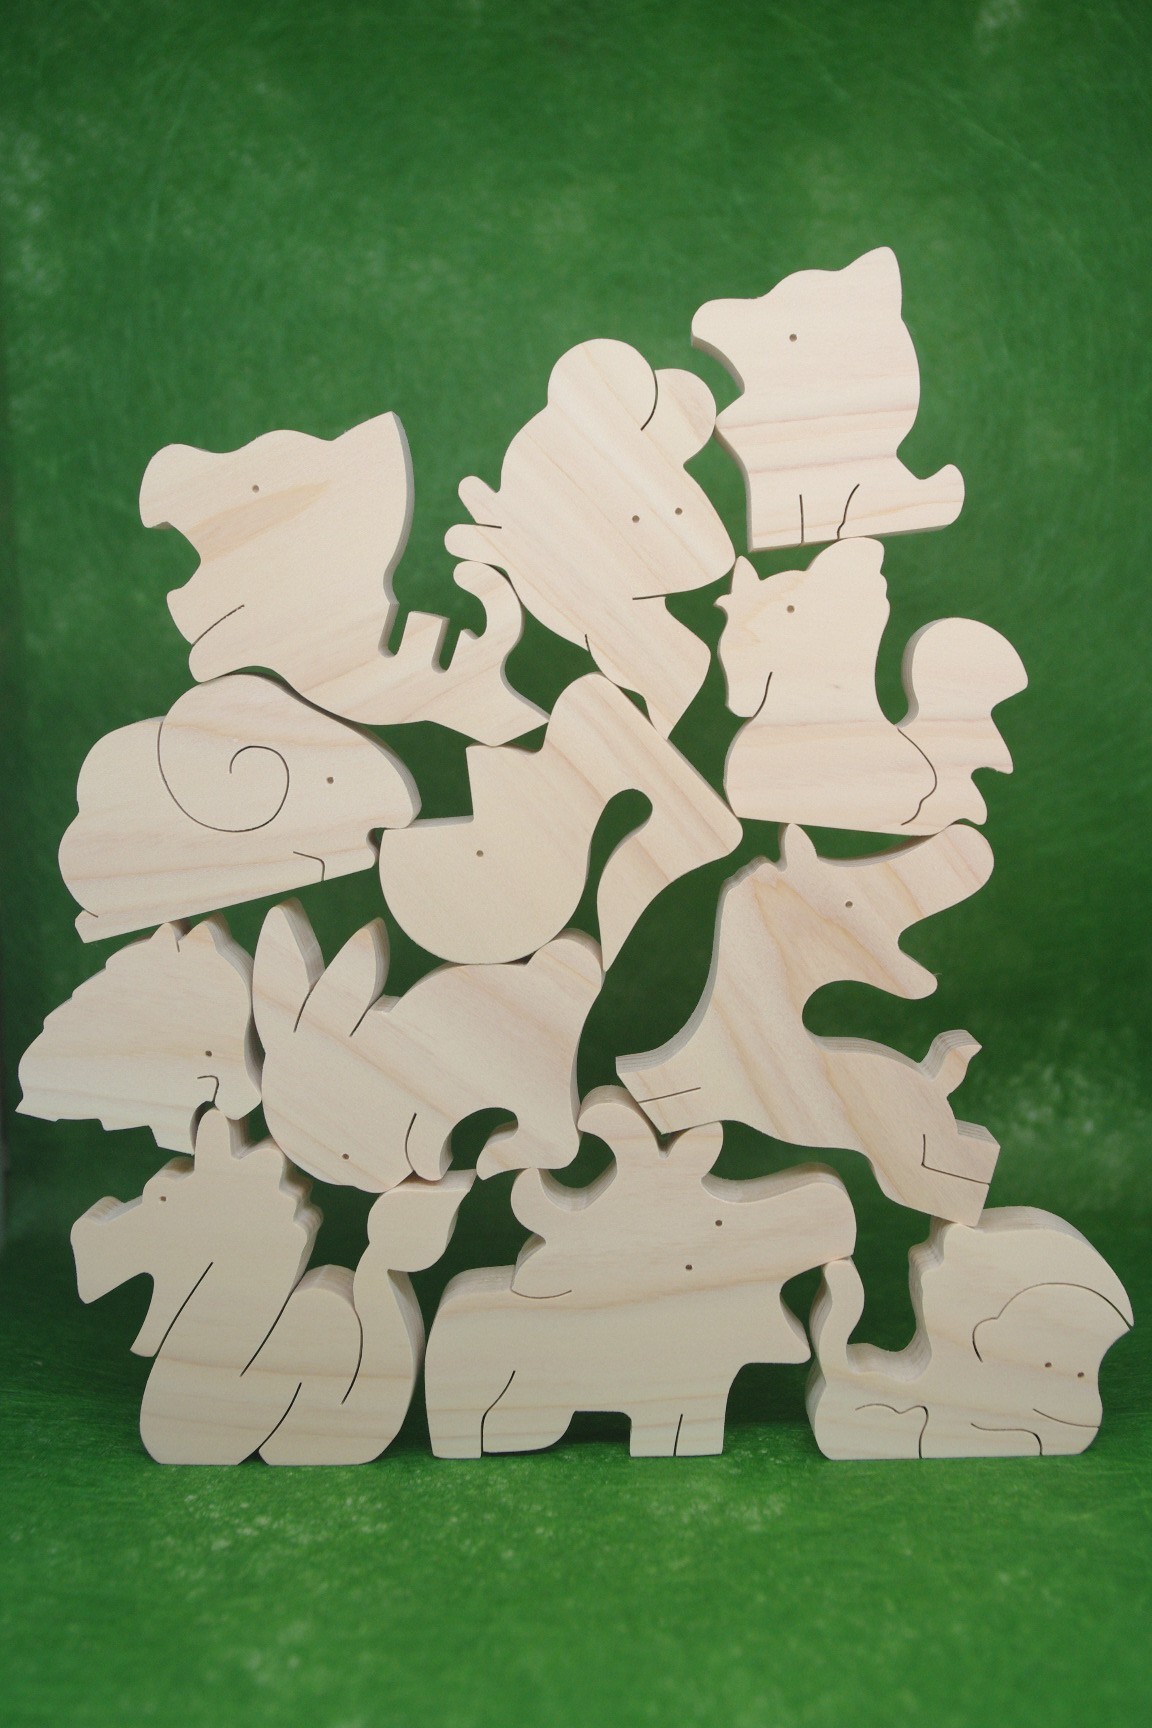 送料無料 木のおもちゃ 動物組み木 十二支 Iichi ハンドメイド クラフト作品 手仕事品の通販